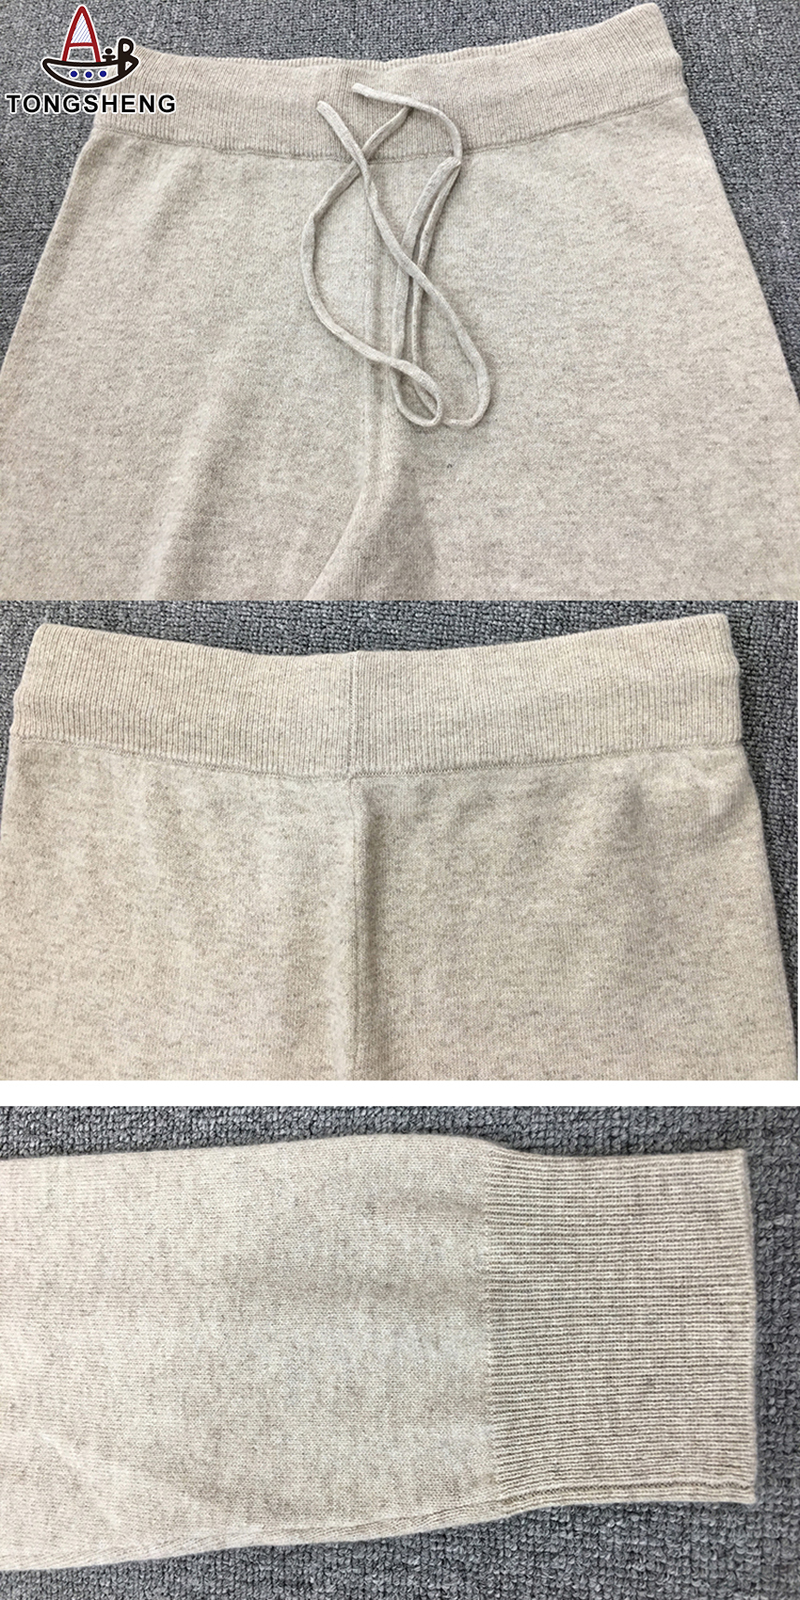 V-neck knitted sweater set bottom details display